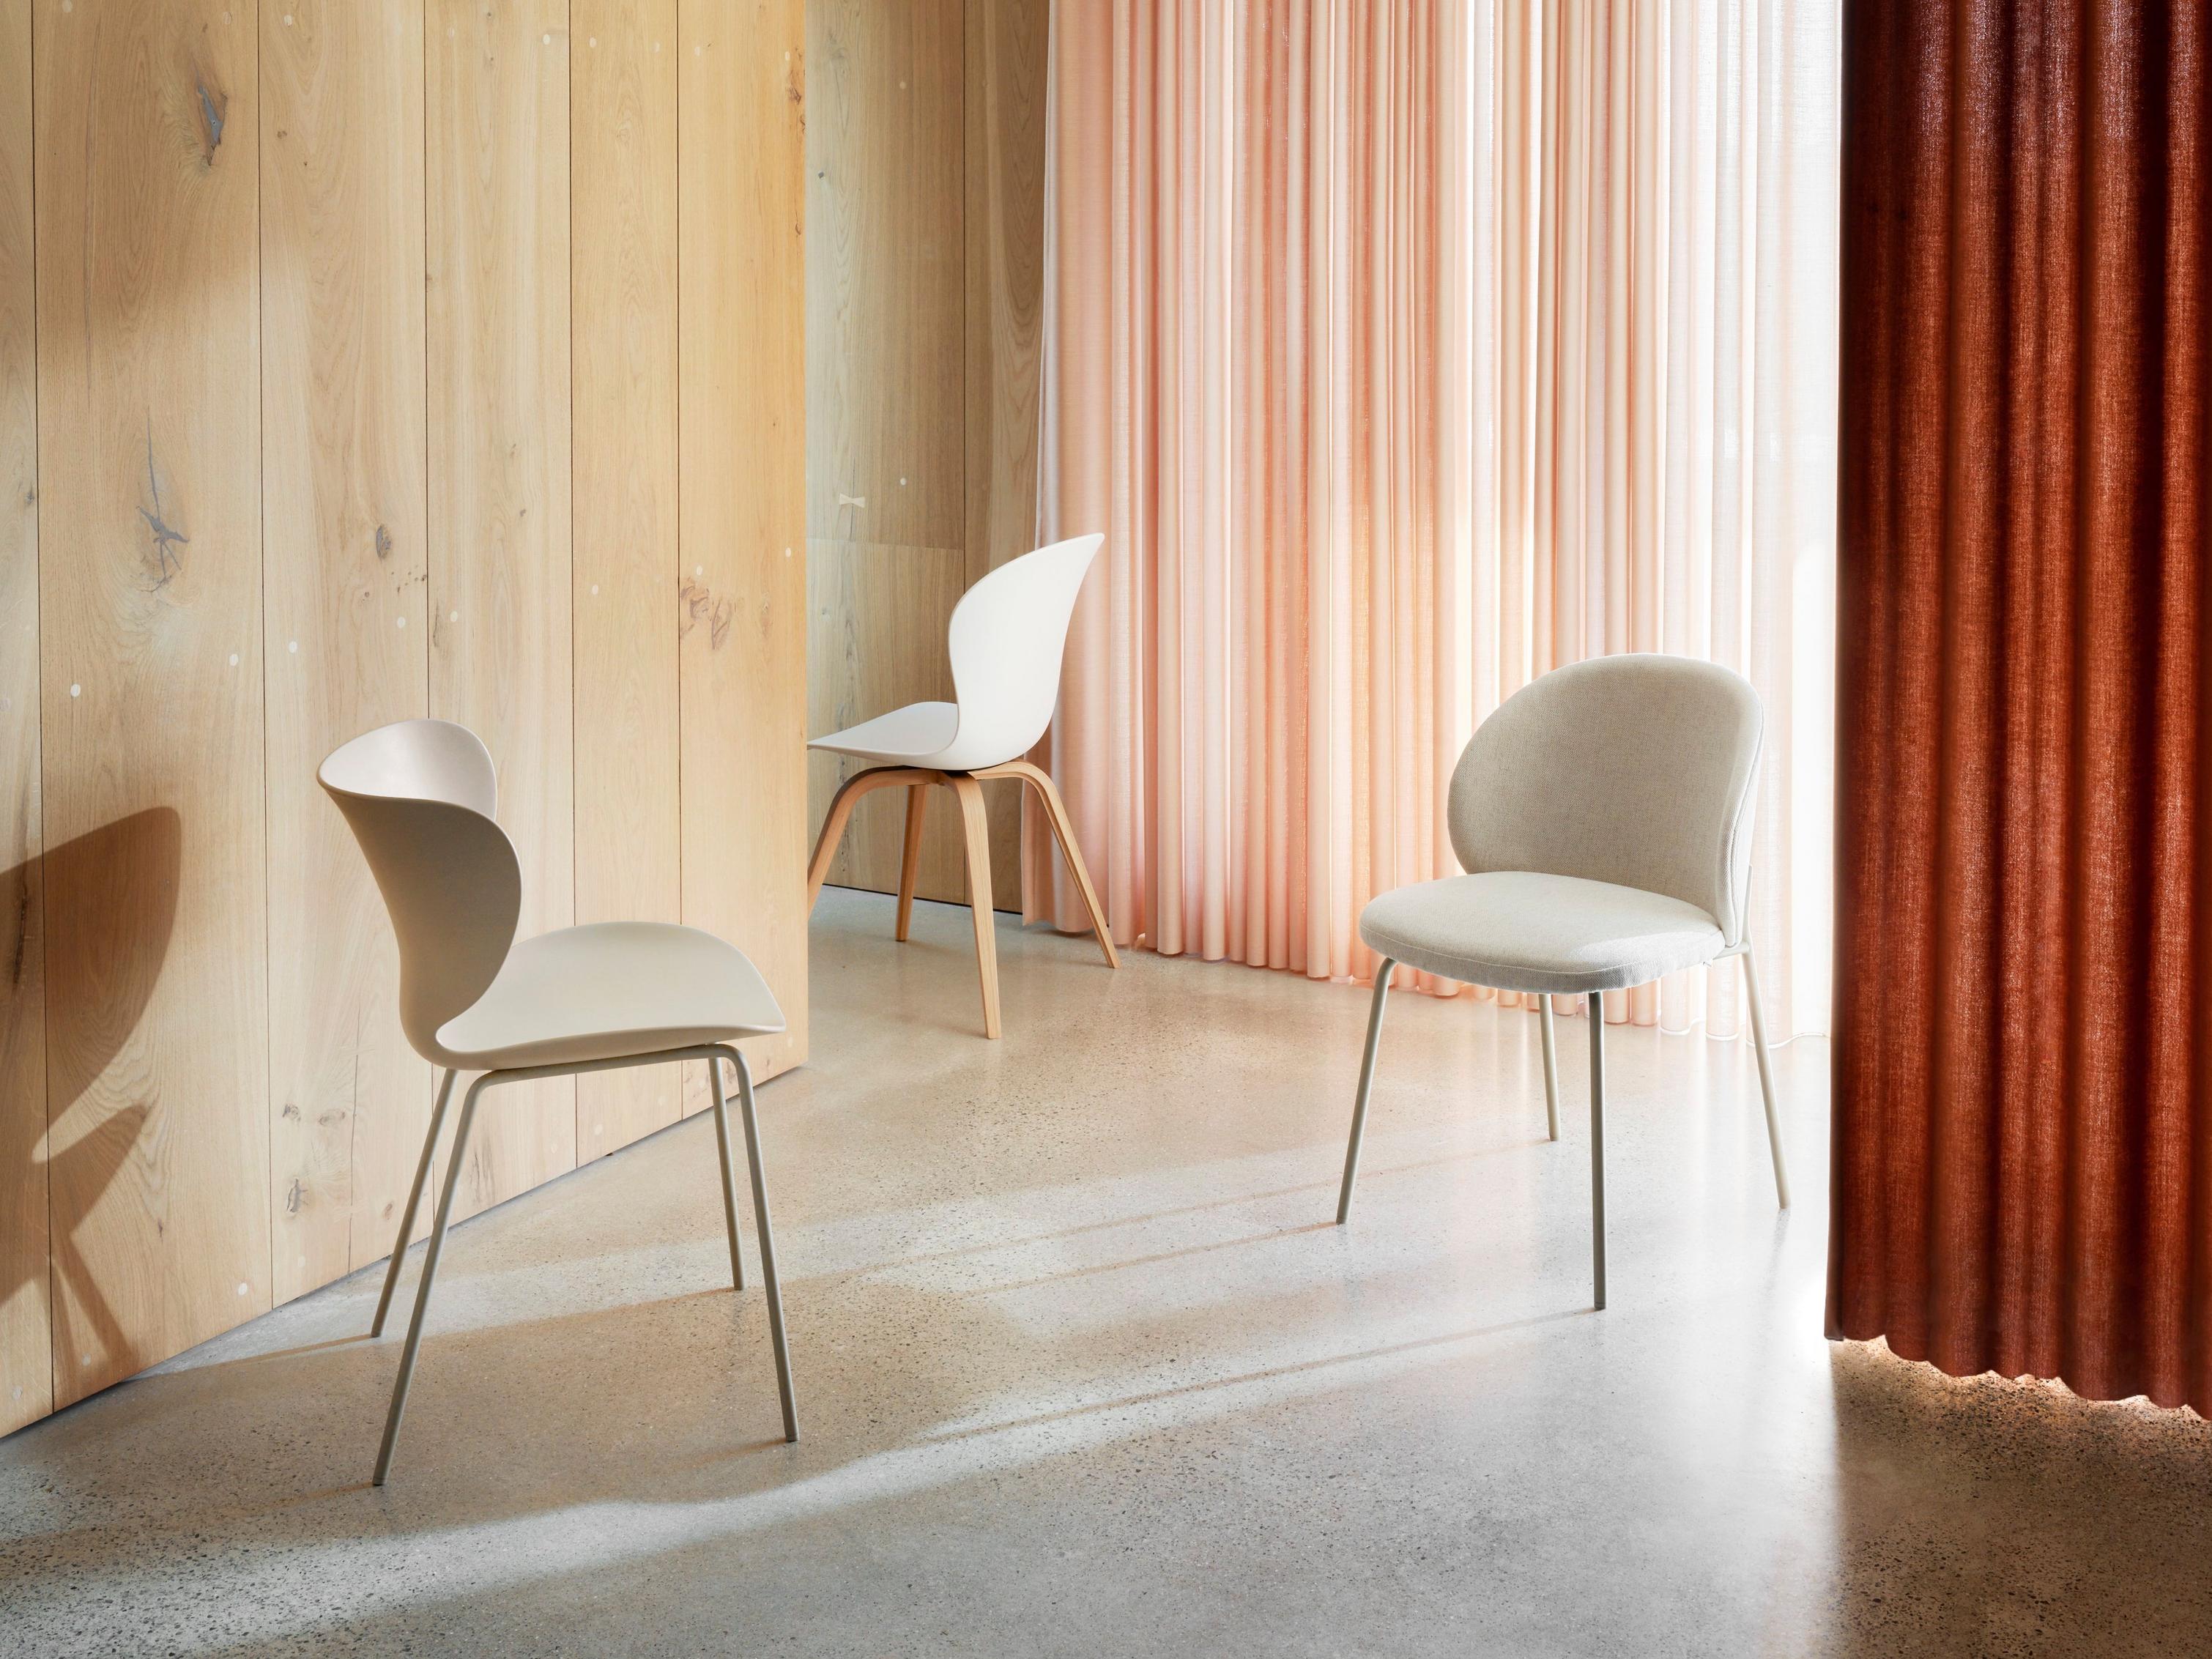 Moderne stole i rum med trævæg og draperede koralrøde gardiner.